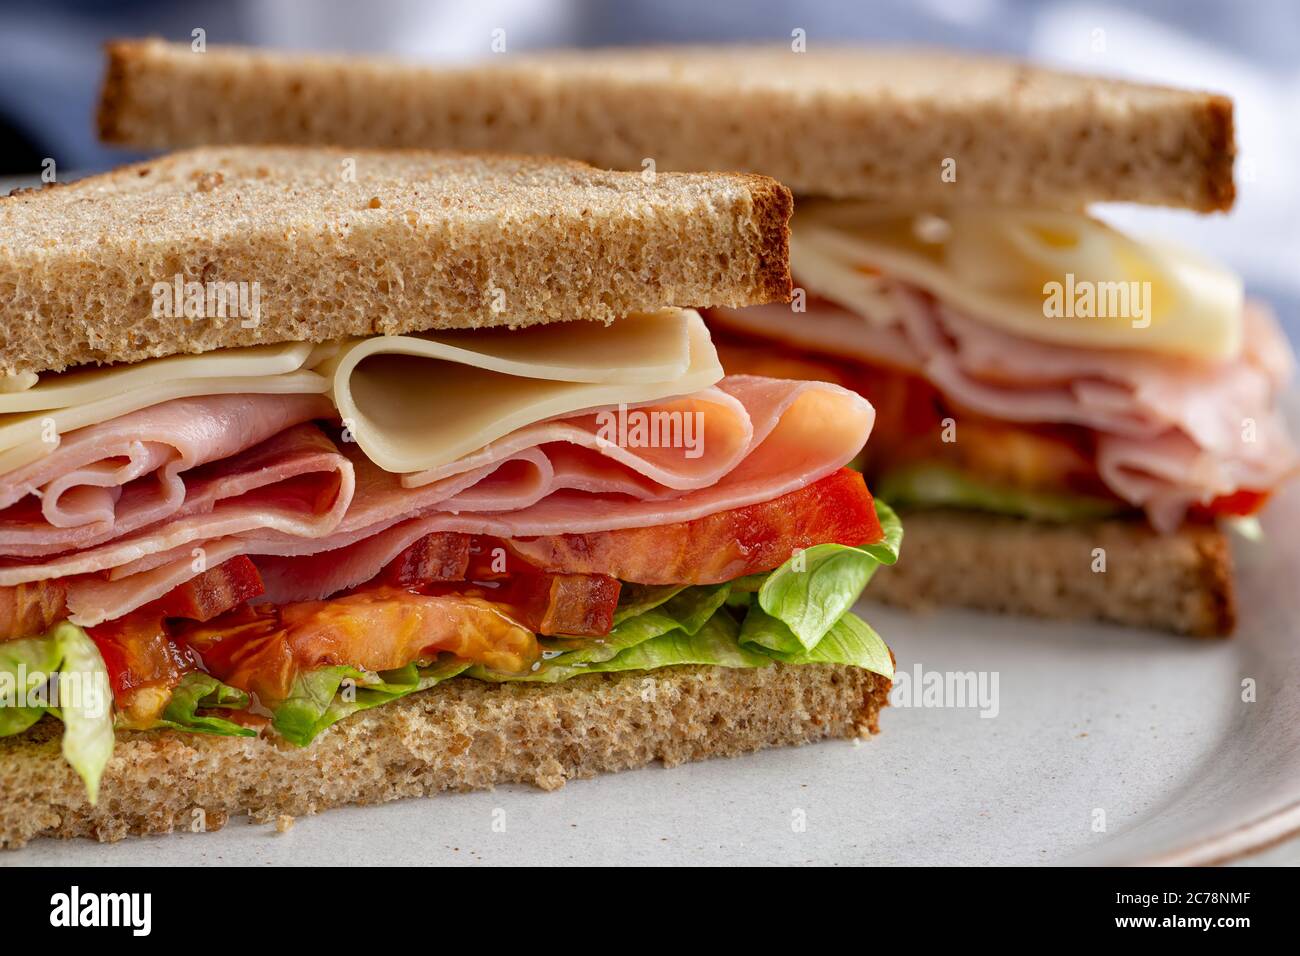 Sandwich mit Schinken, Käse, Salat und Tomaten auf Vollkornbrot, das auf einem Teller halbiert ist Stockfoto